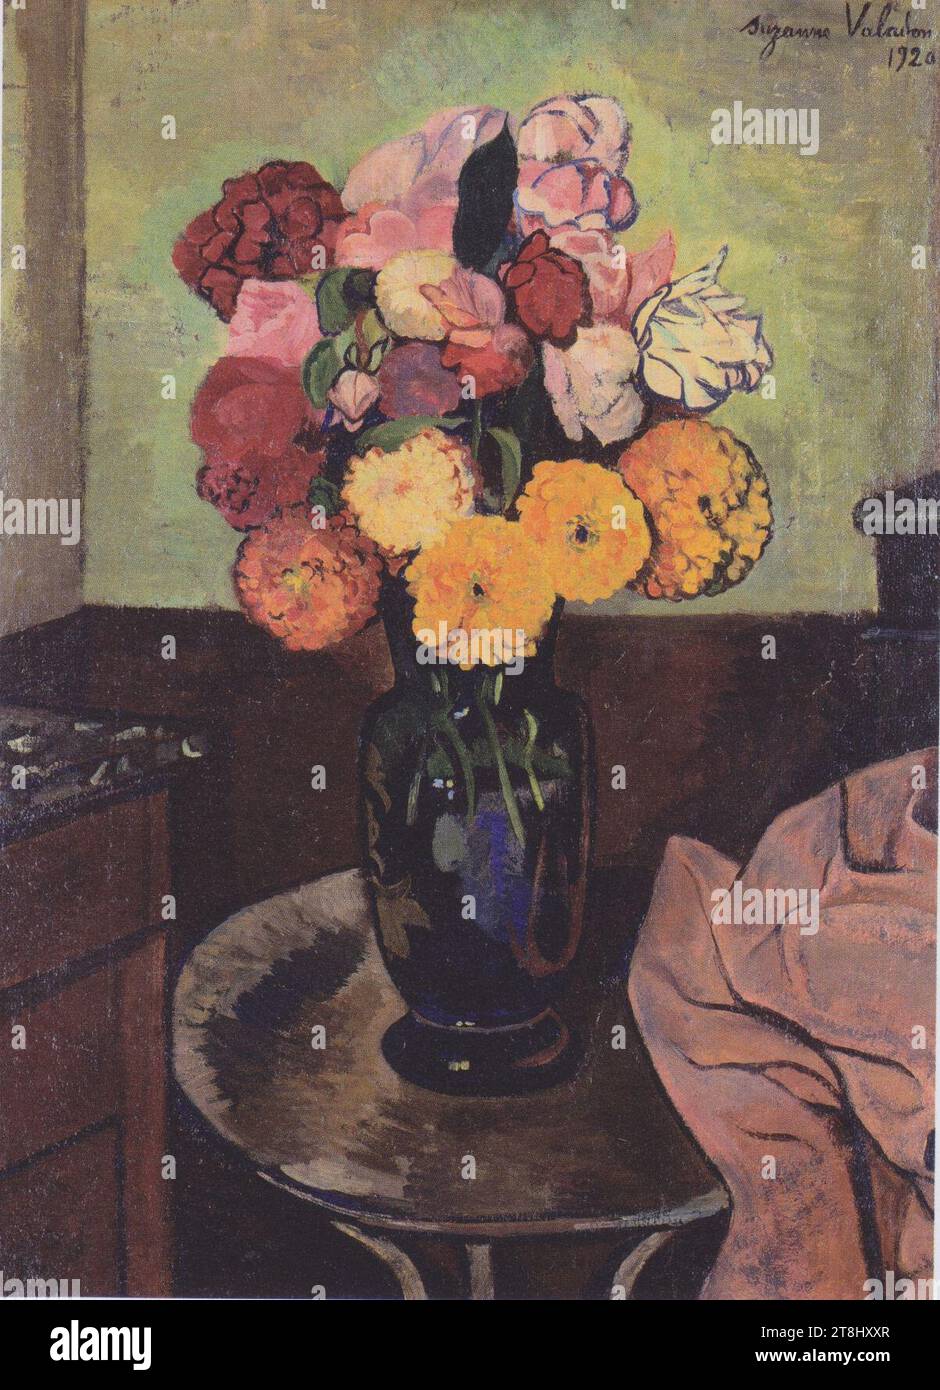 Suzanne Valadon - Blumenvase auf einem runden Tisch - 1920. Stock Photo